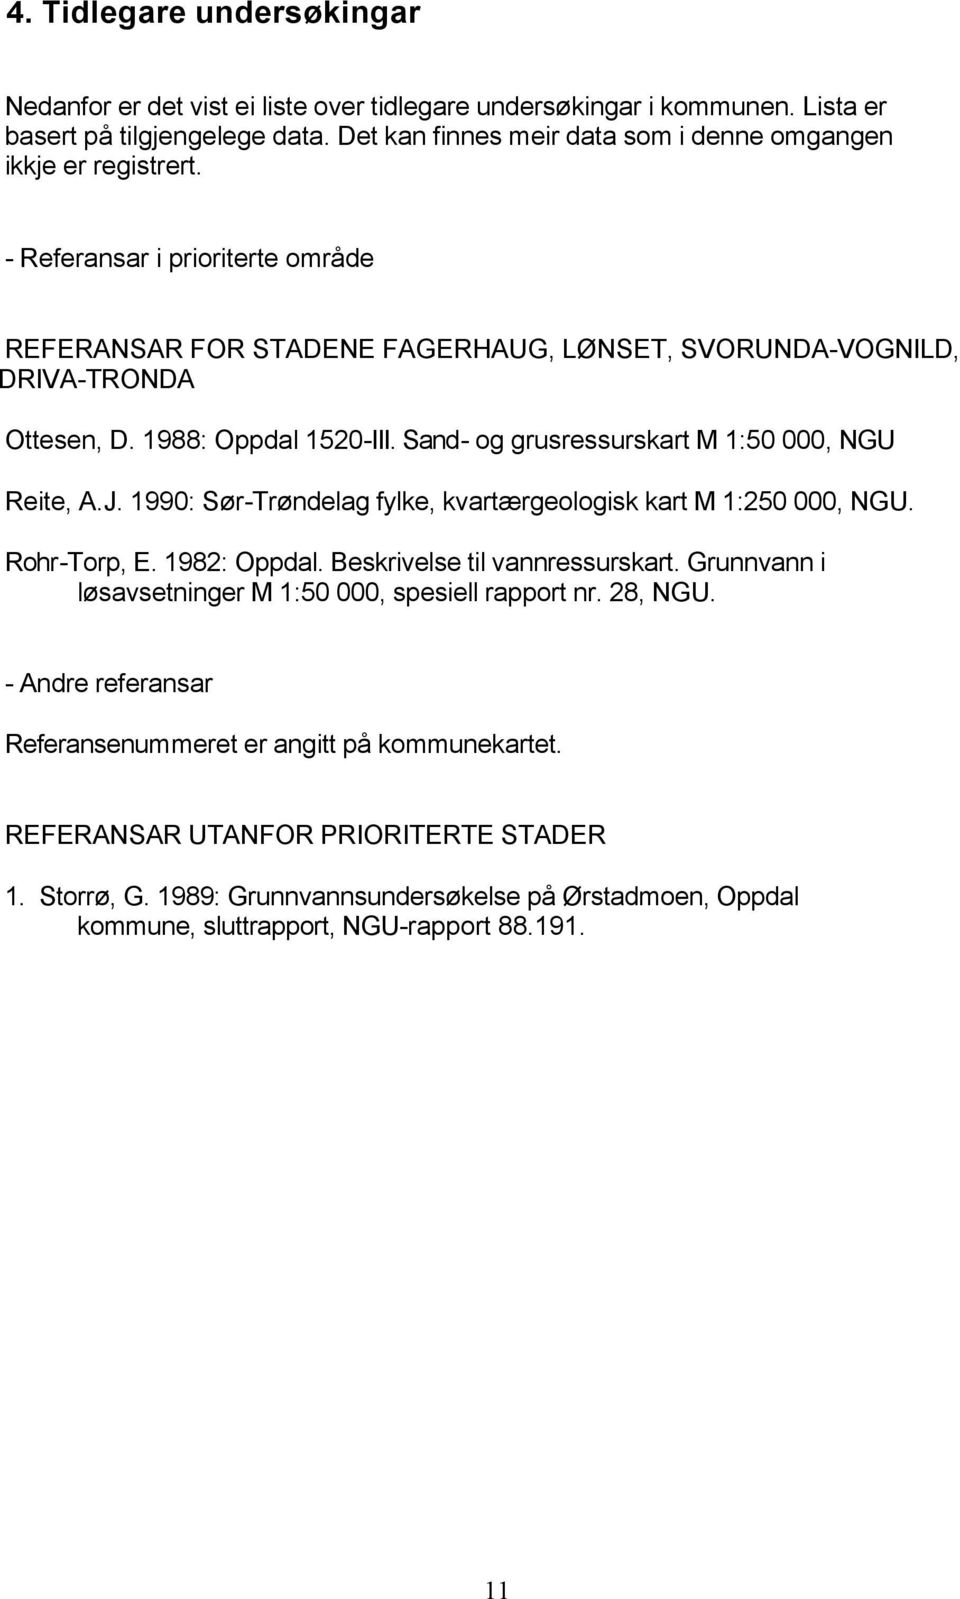 1988: Oppdal 1520-III. Sand- og grusressurskart M 1:50 000, NGU Reite, A.J. 1990: Sør-Trøndelag fylke, kvartærgeologisk kart M 1:250 000, NGU. Rohr-Torp, E. 1982: Oppdal.